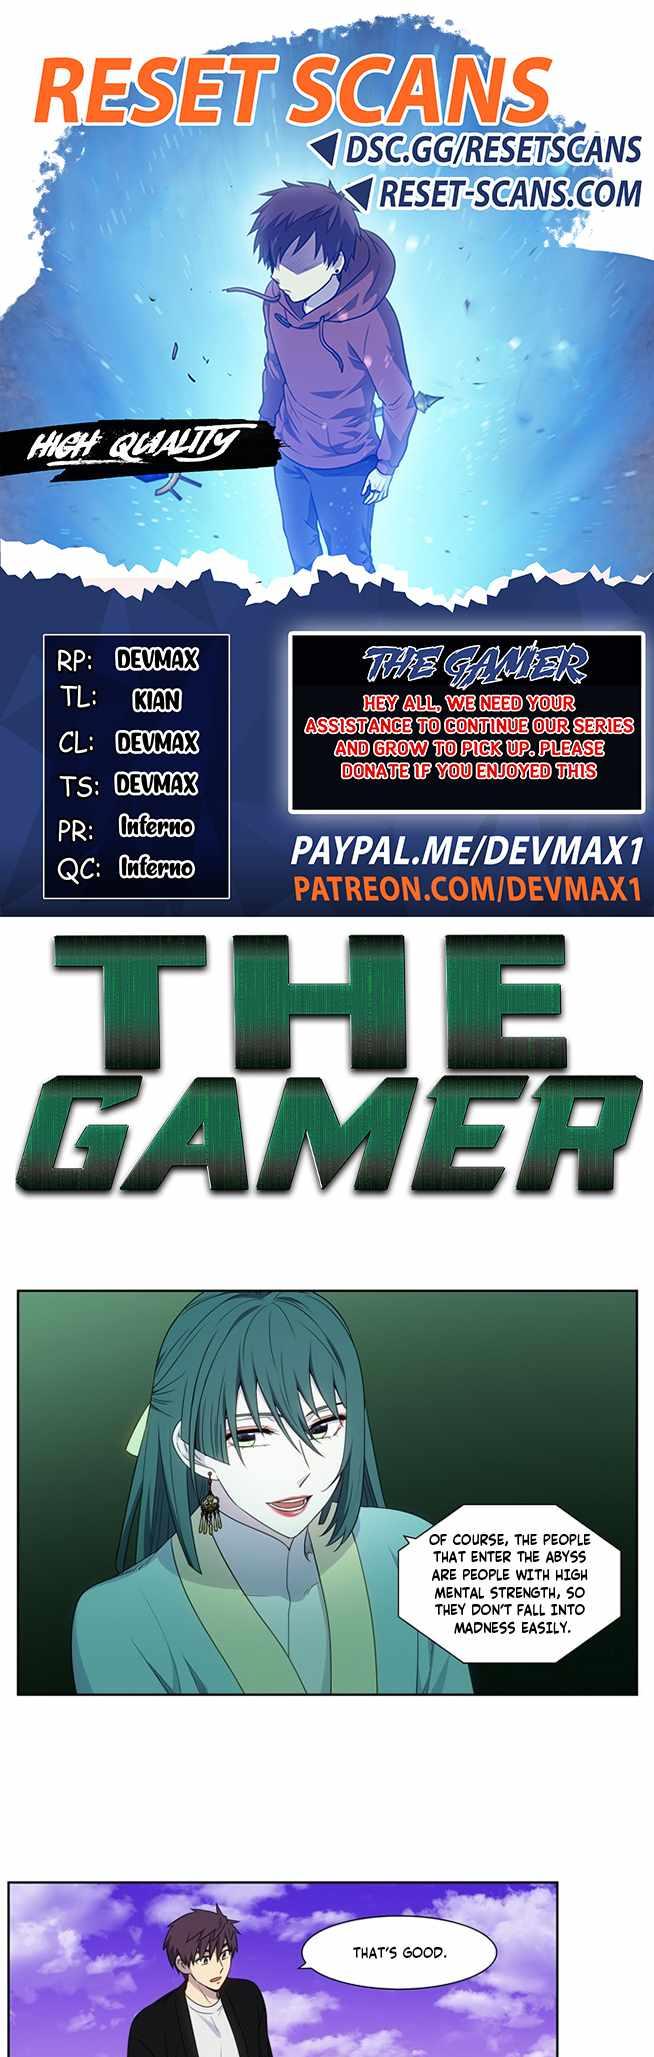 The Gamer, Chapter 420 - The Gamer Manga Online